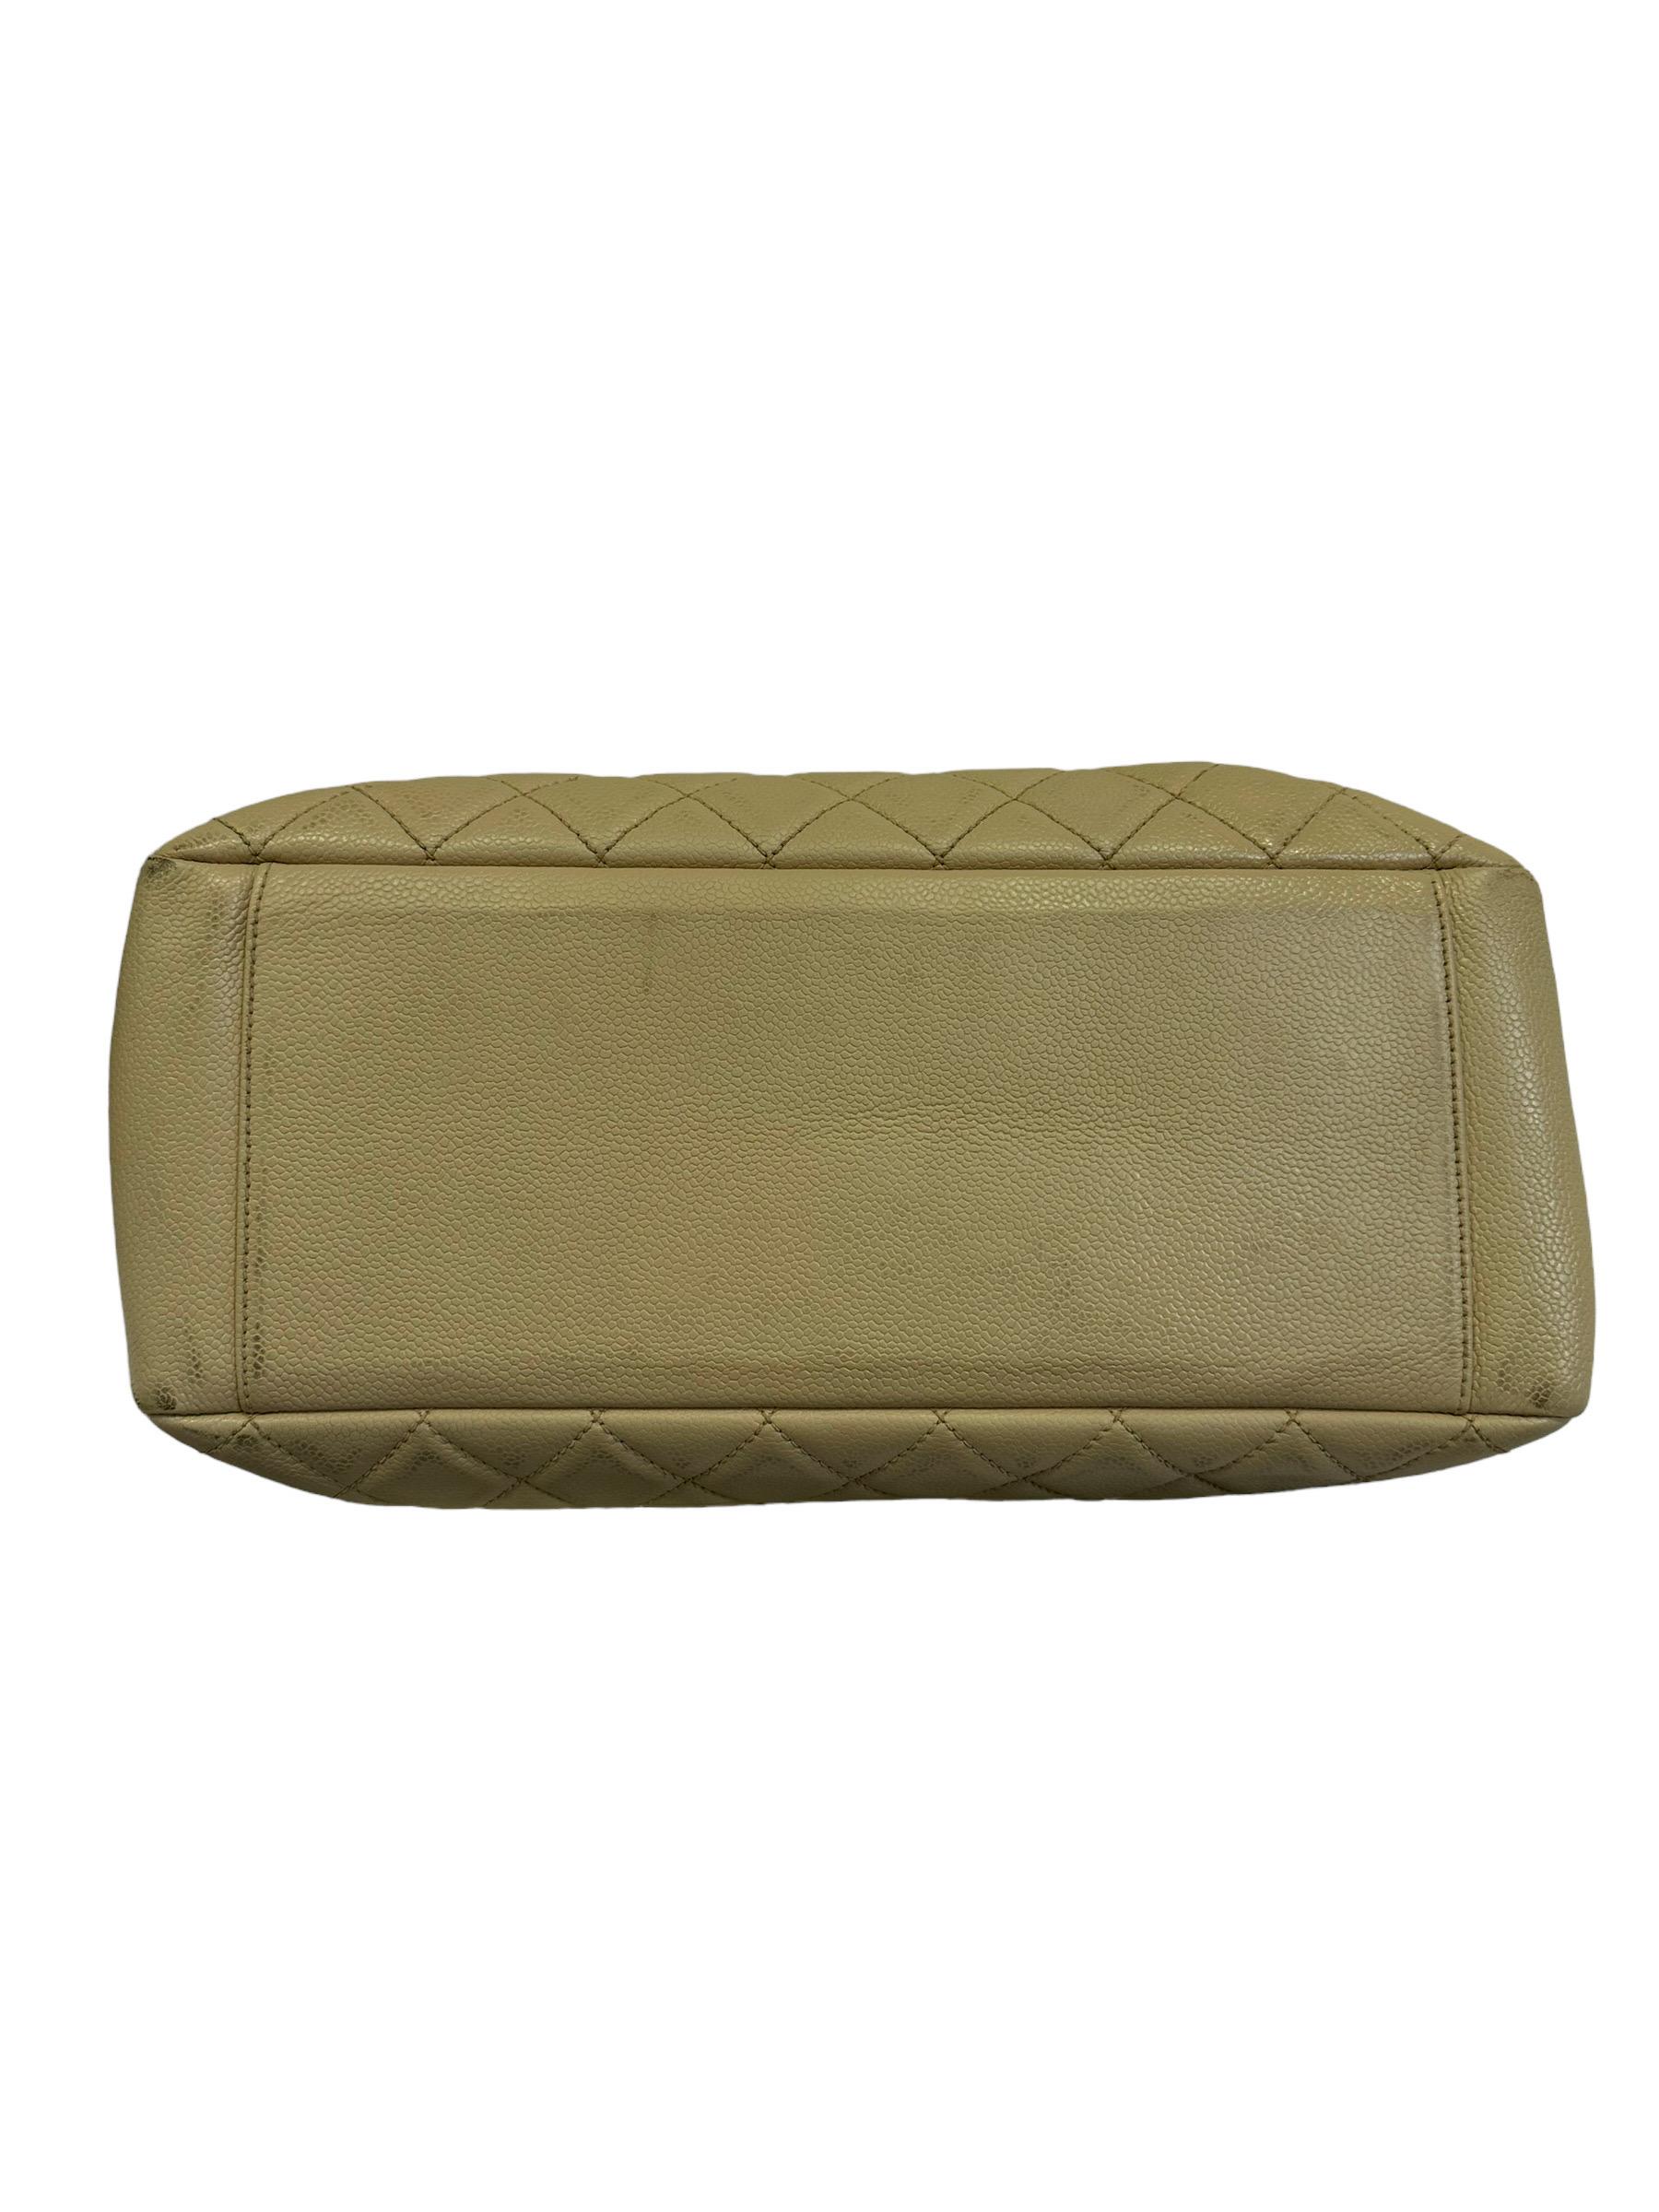 2014 Chanel Beige Leather GST Shoulder Bag For Sale 4